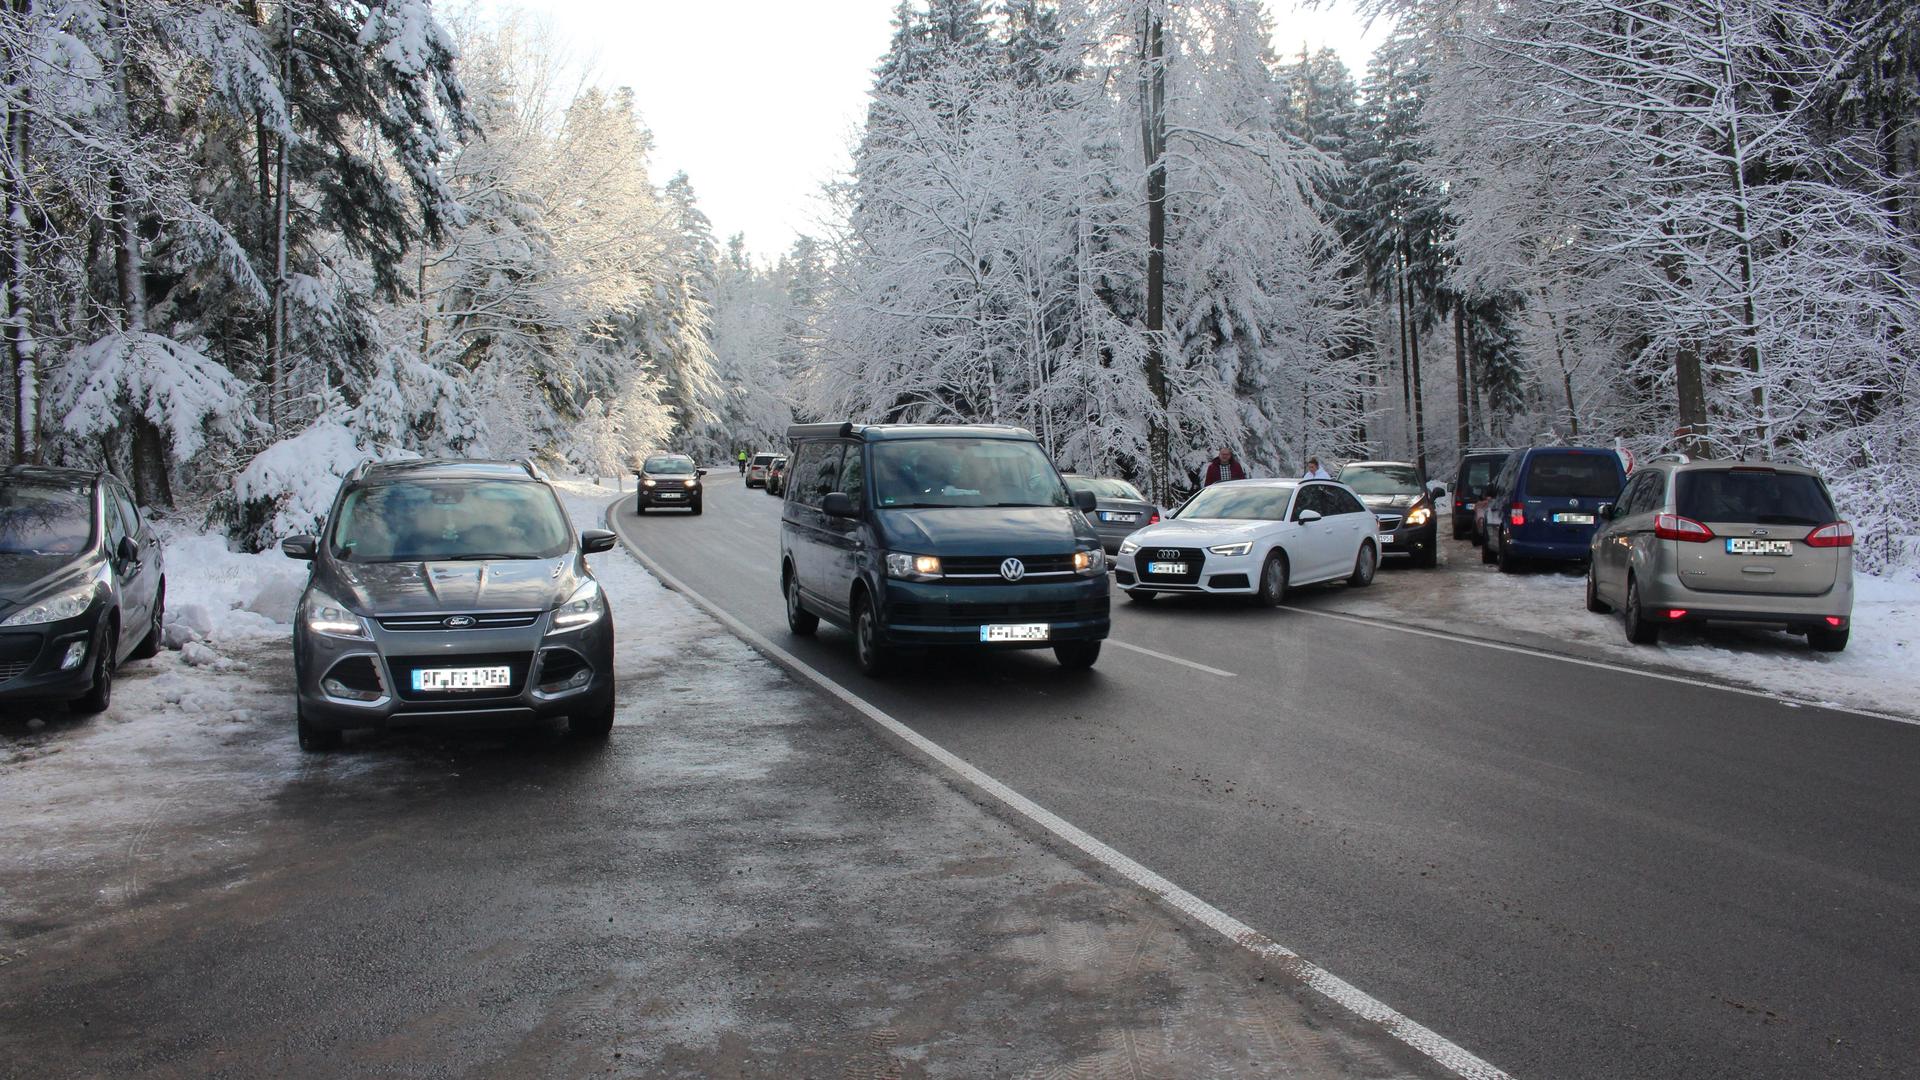 Fahrzeug auf Straße in verschneiten Waldgebiet